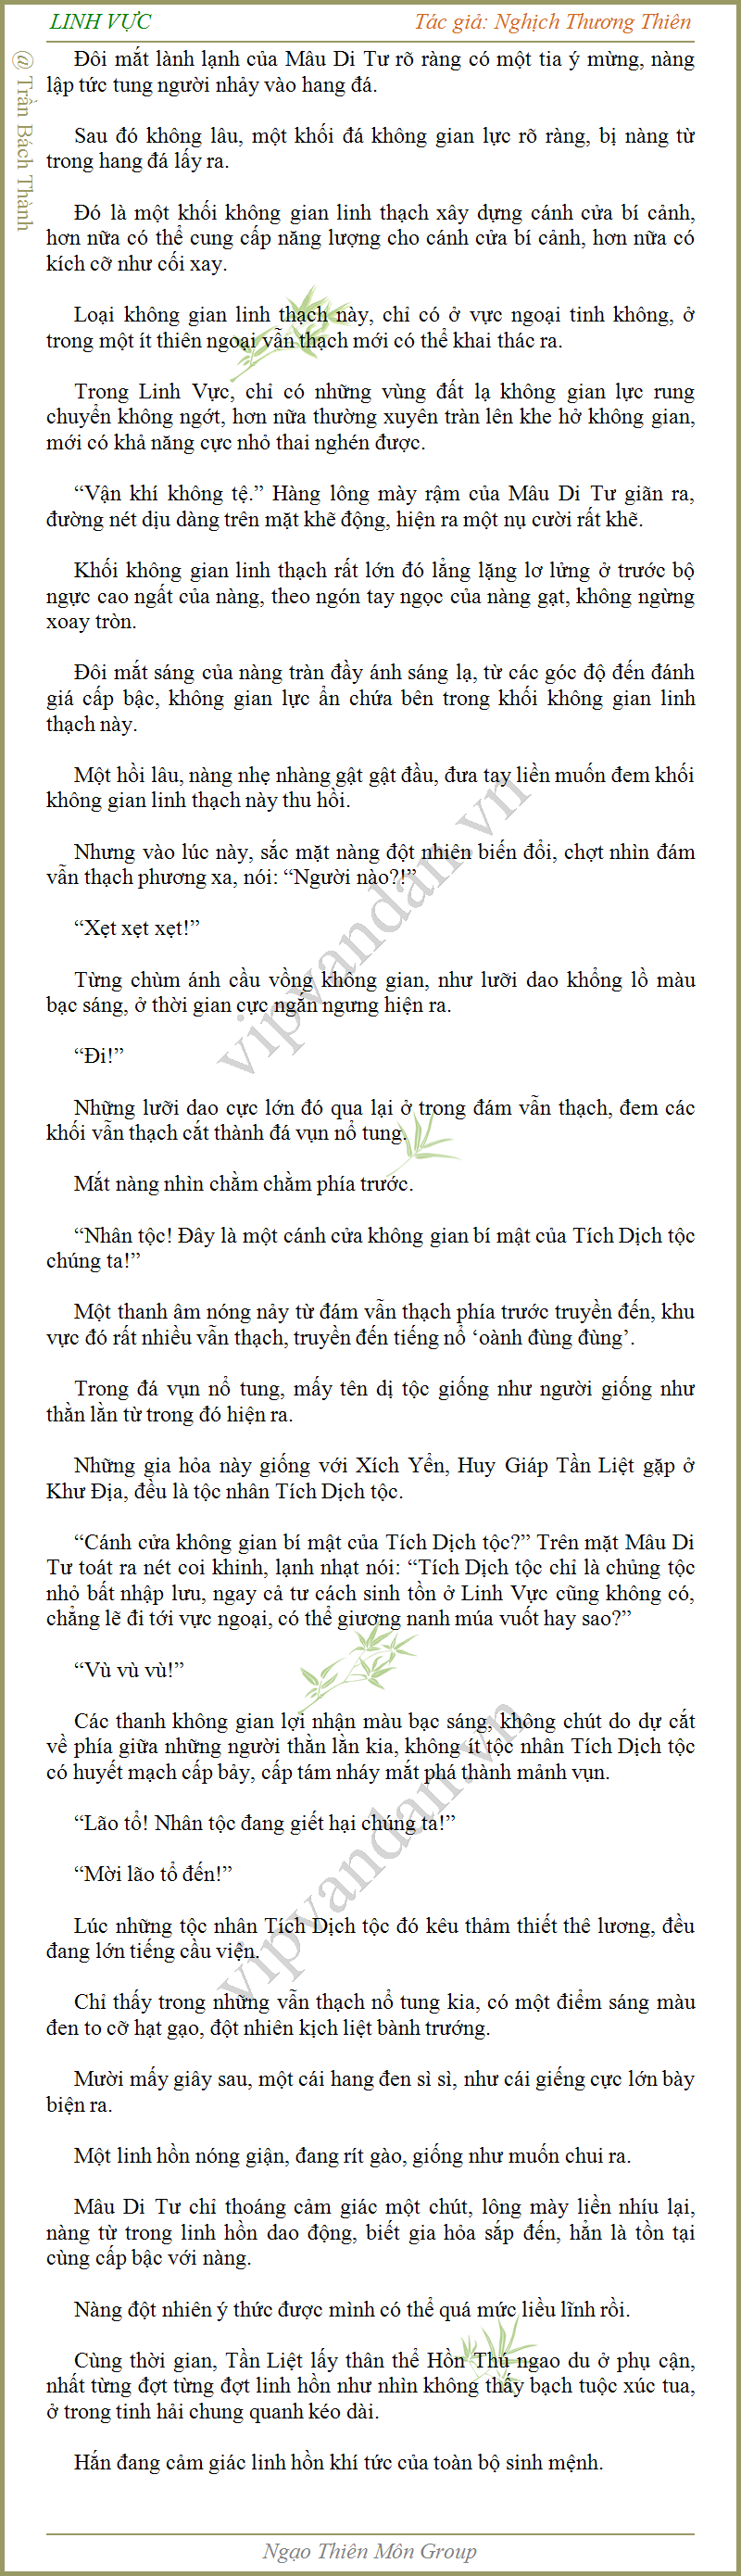 Linh-vuc 1186-2.png